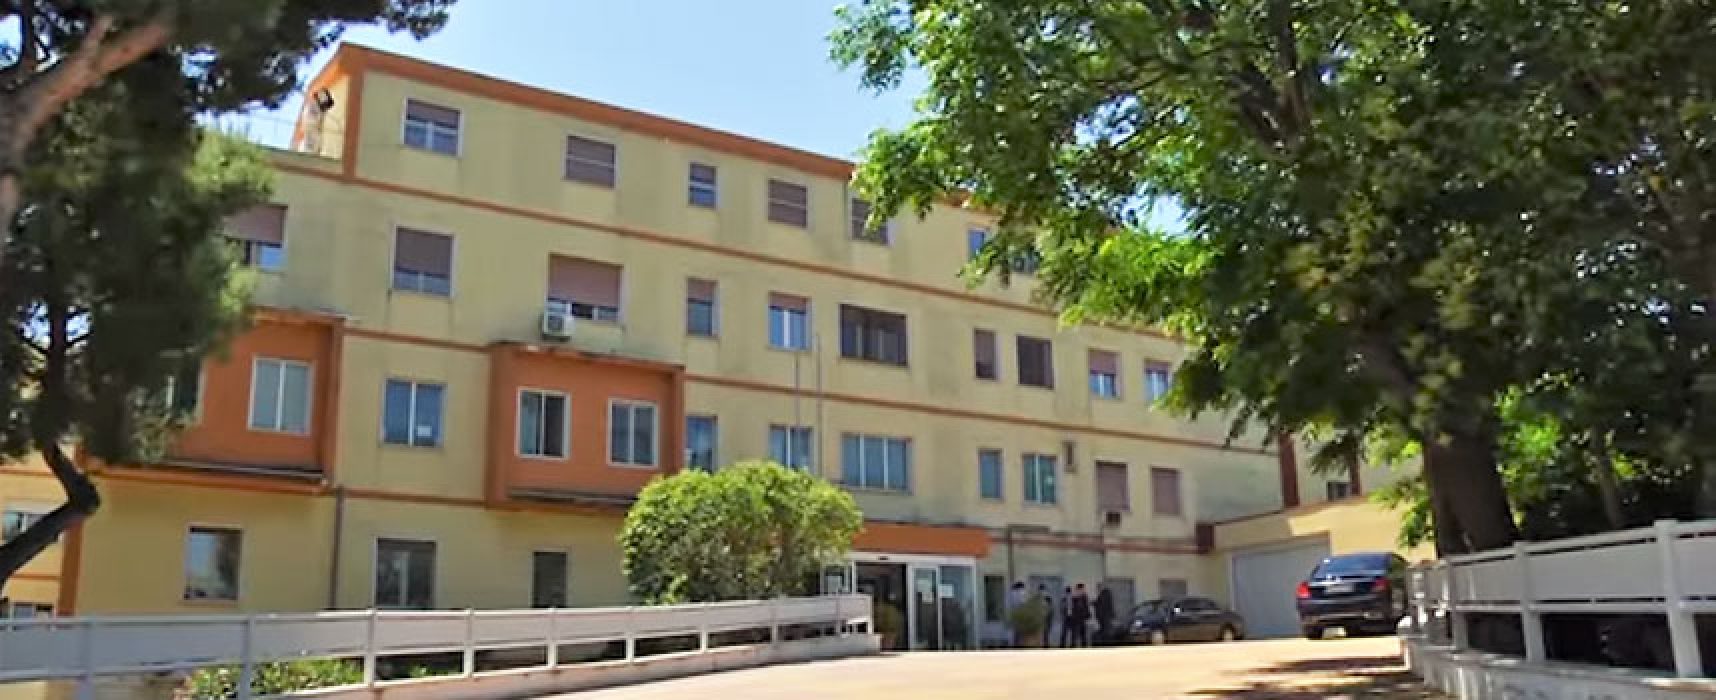 Fials Bat: “Ridiamo l’ospedale ai cittadini mantenendo un solo reparto Covid”